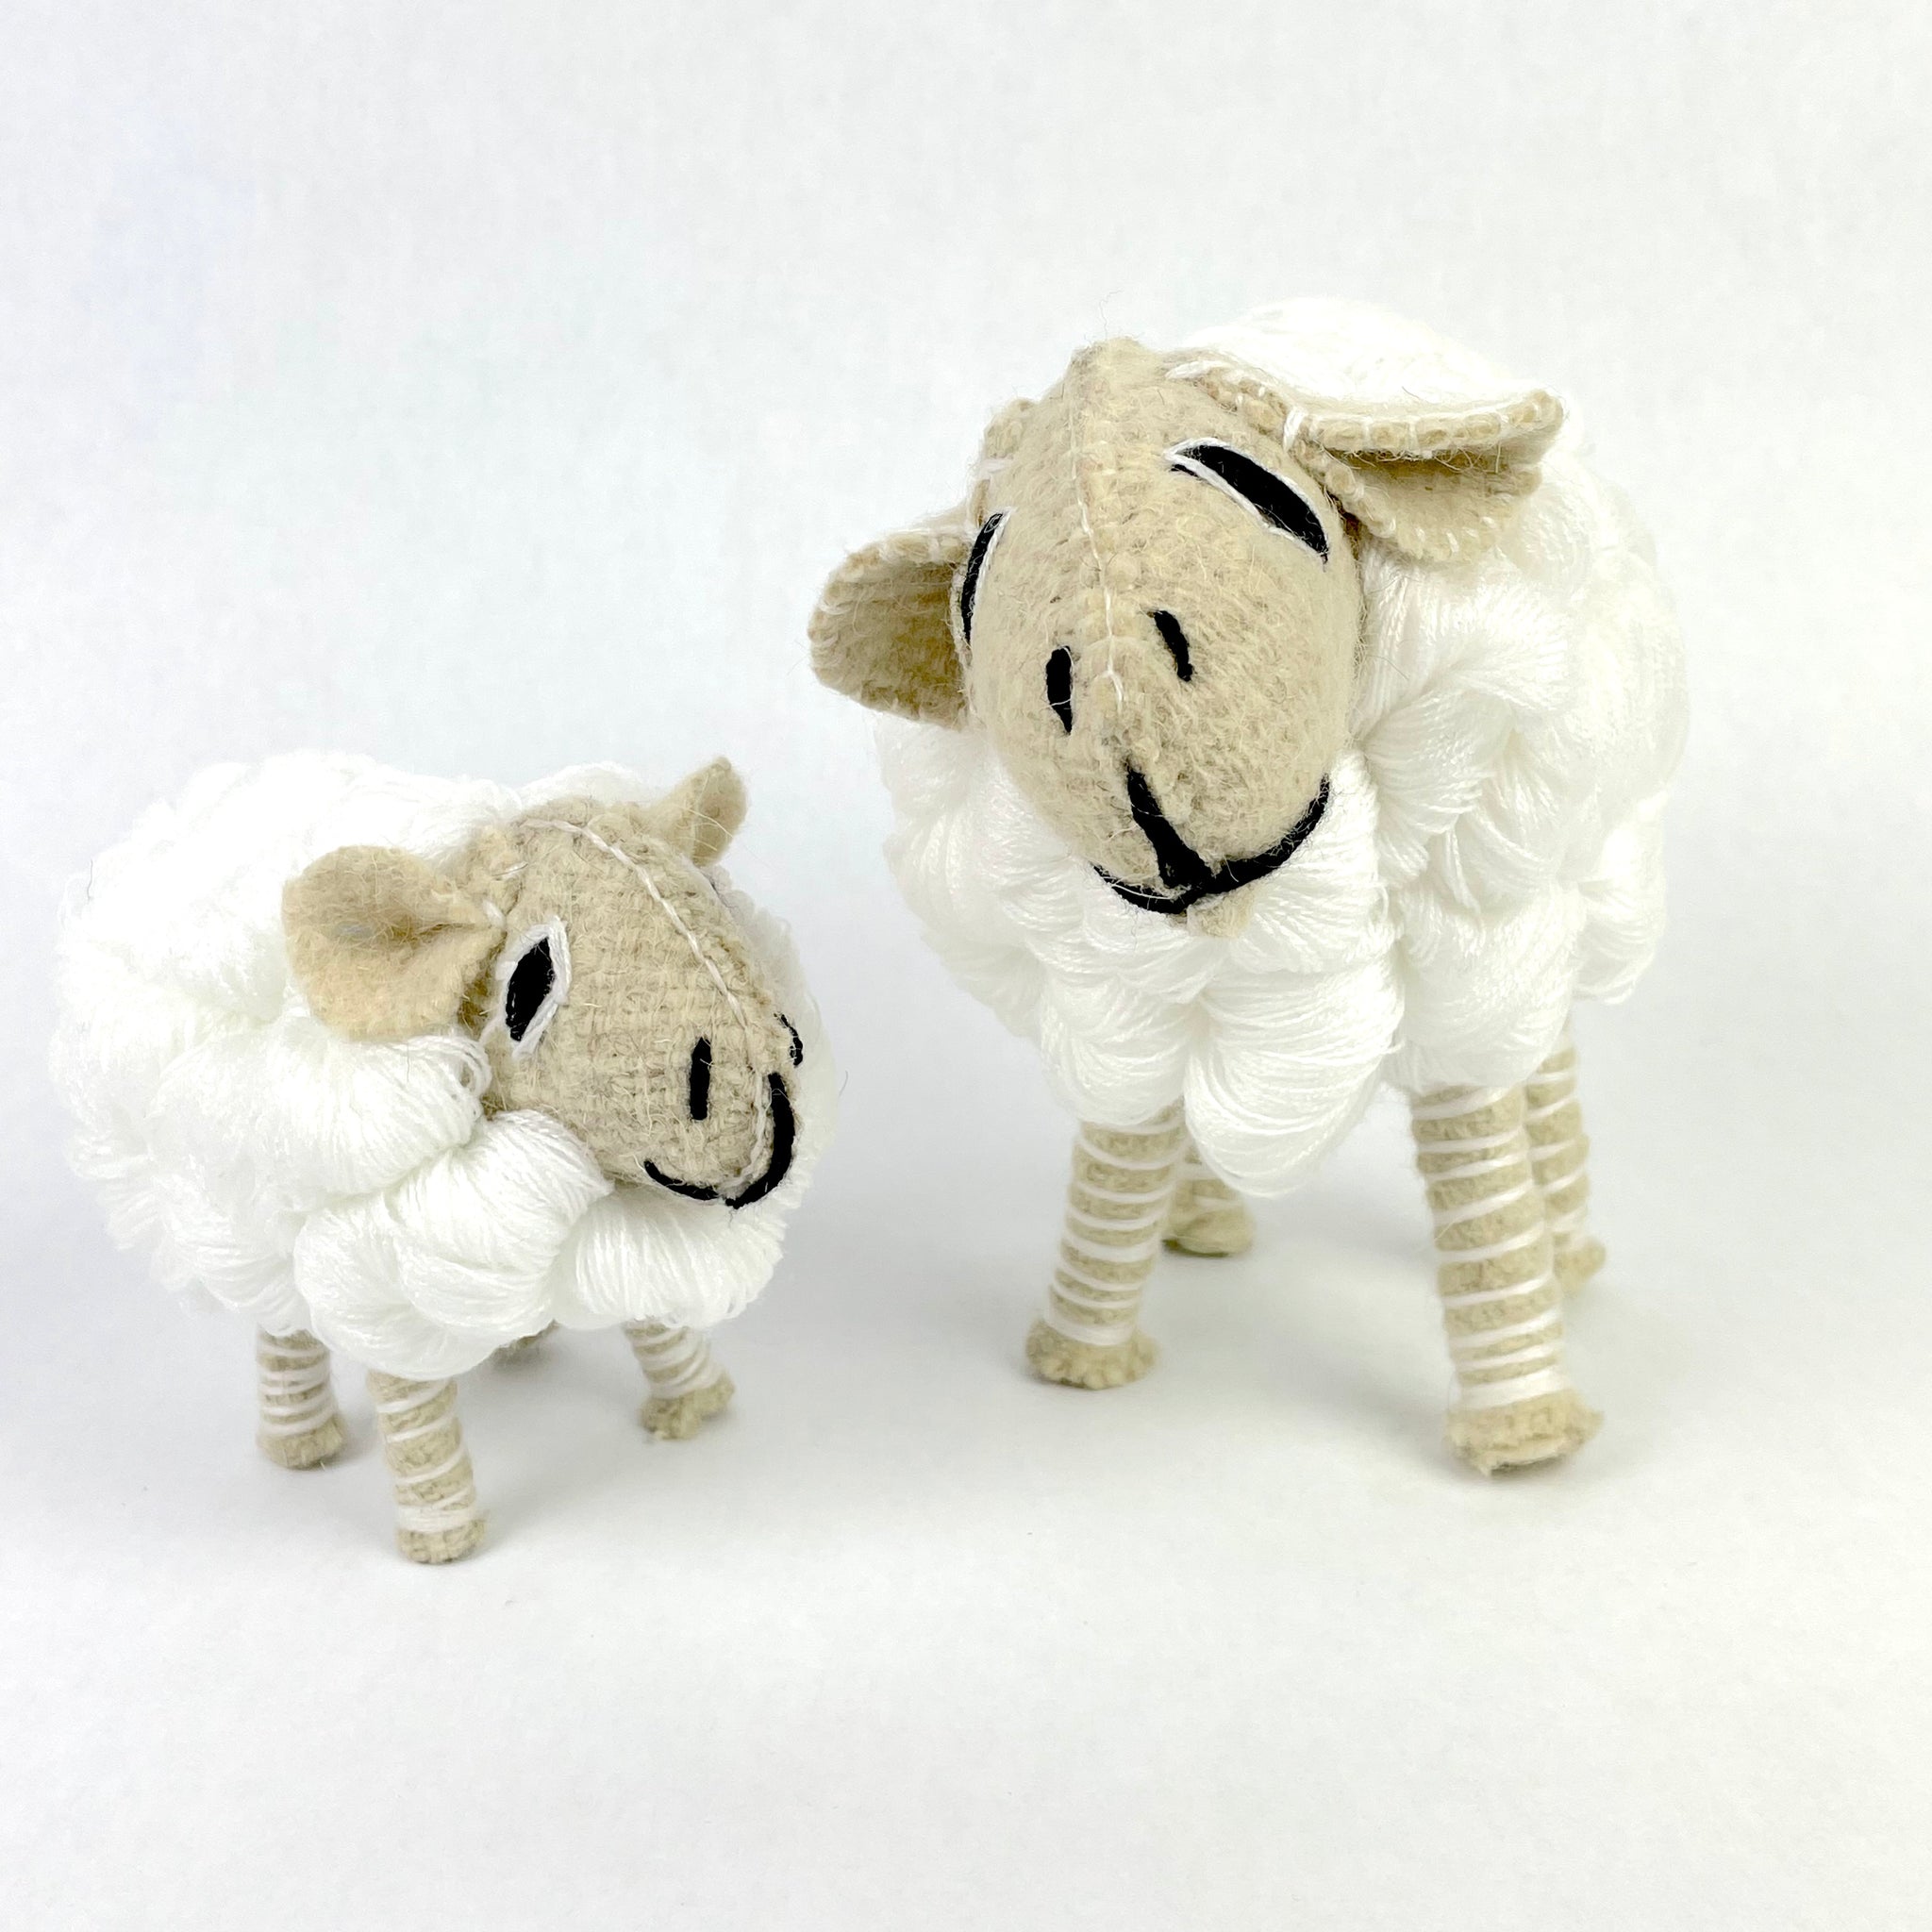 folk art sheep, fair trade sheep, white sheep, mama and baby sheep